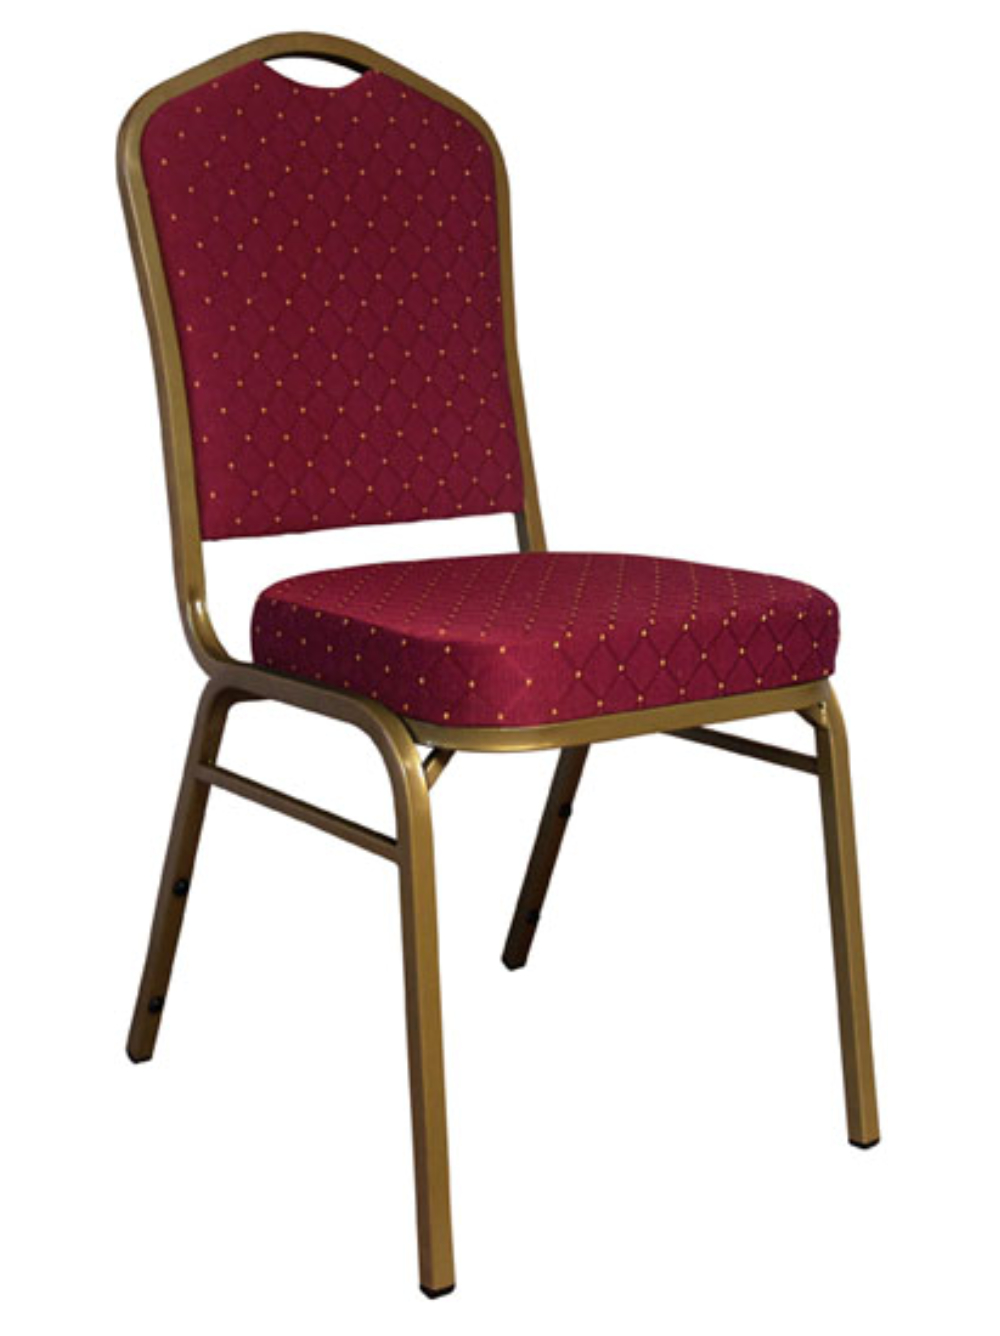 Wholesale Banquet Chairs, Chiavari Chairs